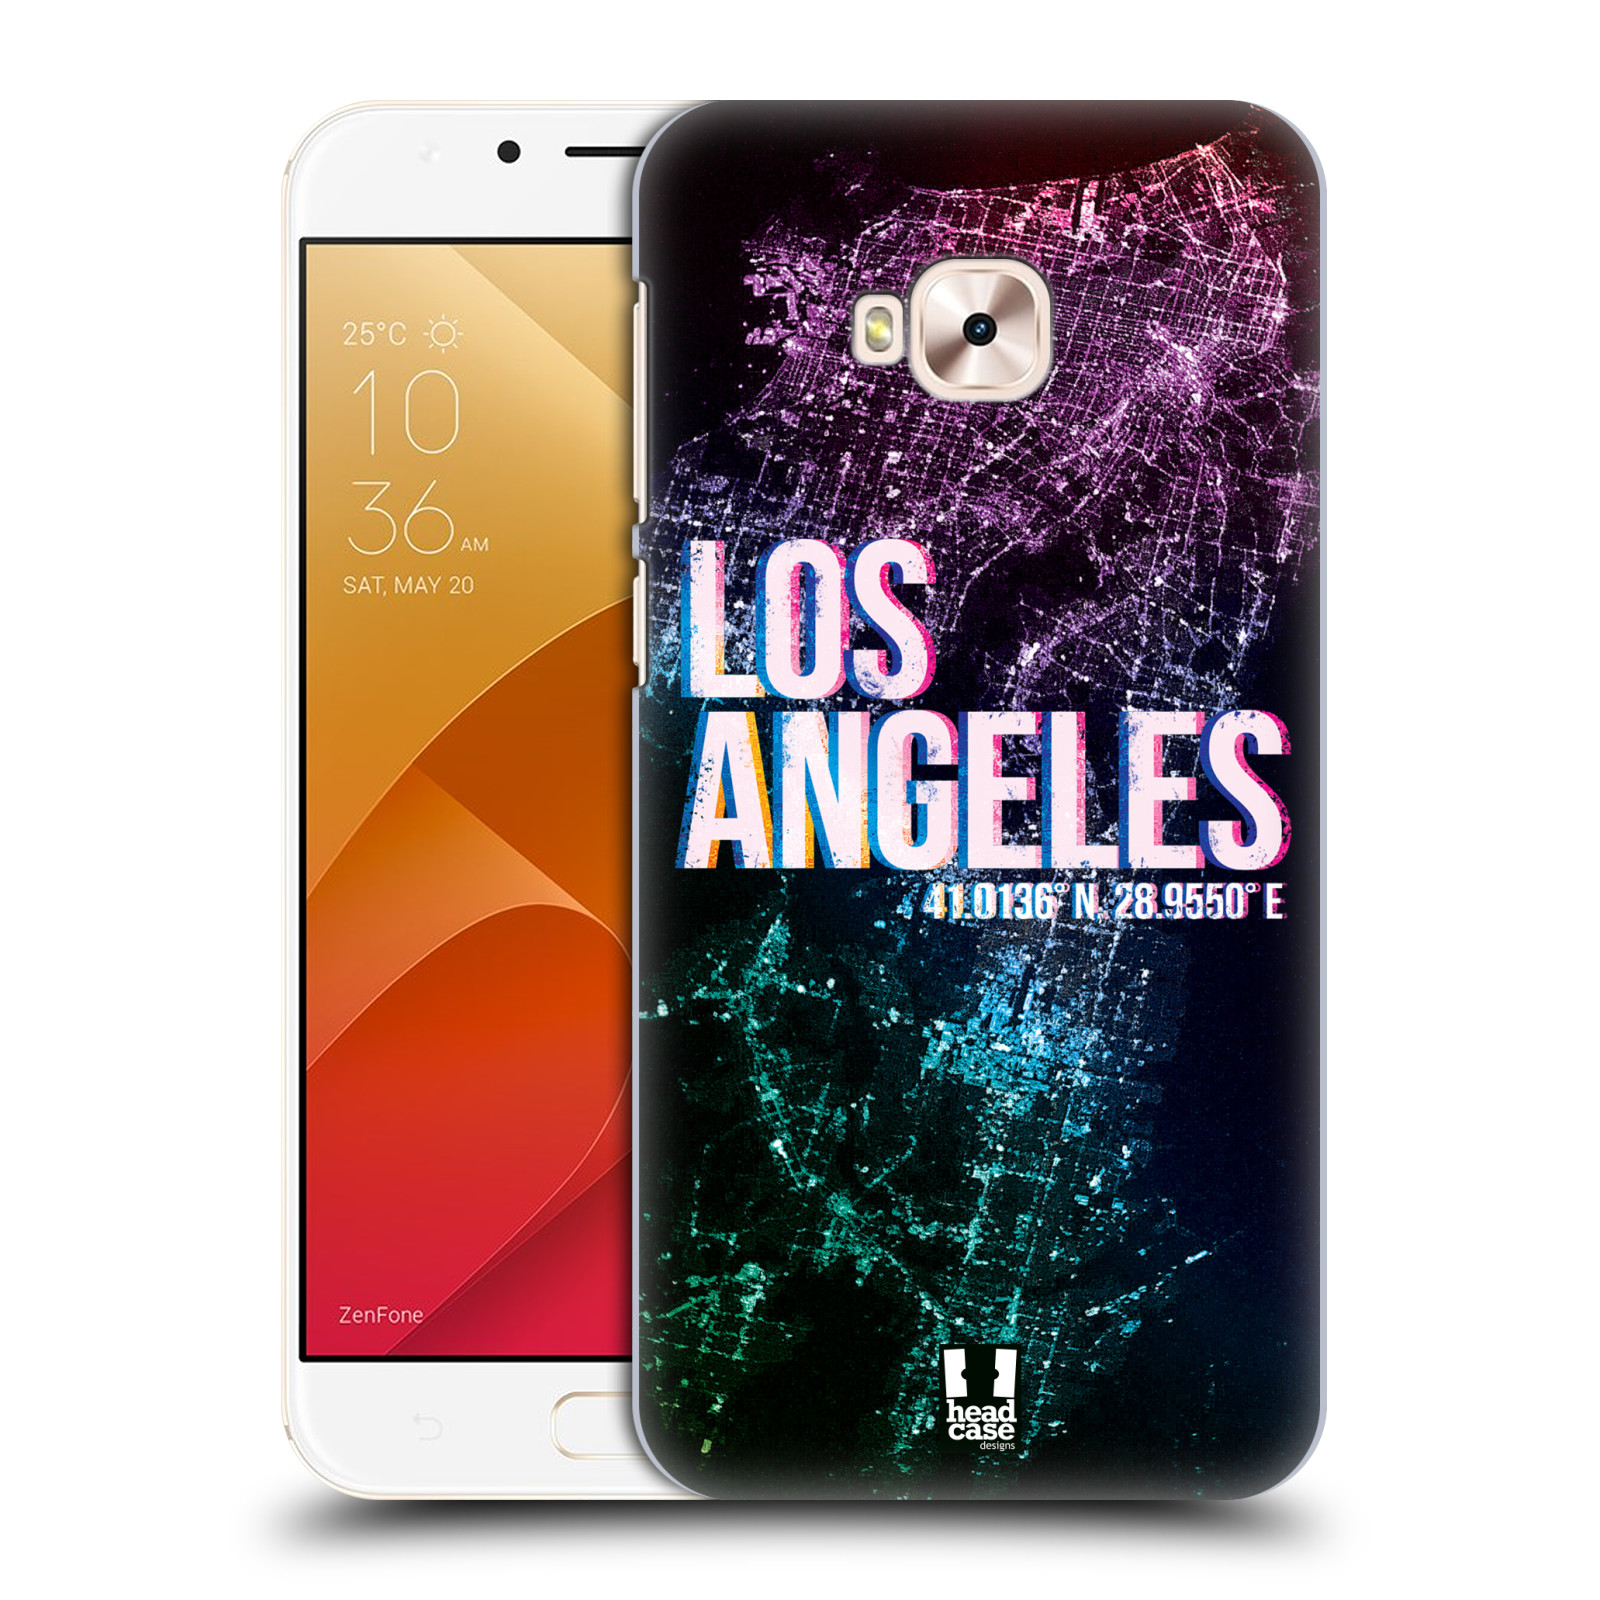 HEAD CASE plastový obal na mobil Asus Zenfone 4 Selfie Pro ZD552KL vzor Světla známých měst, Satelitní snímky fialová USA, LOS ANGELES